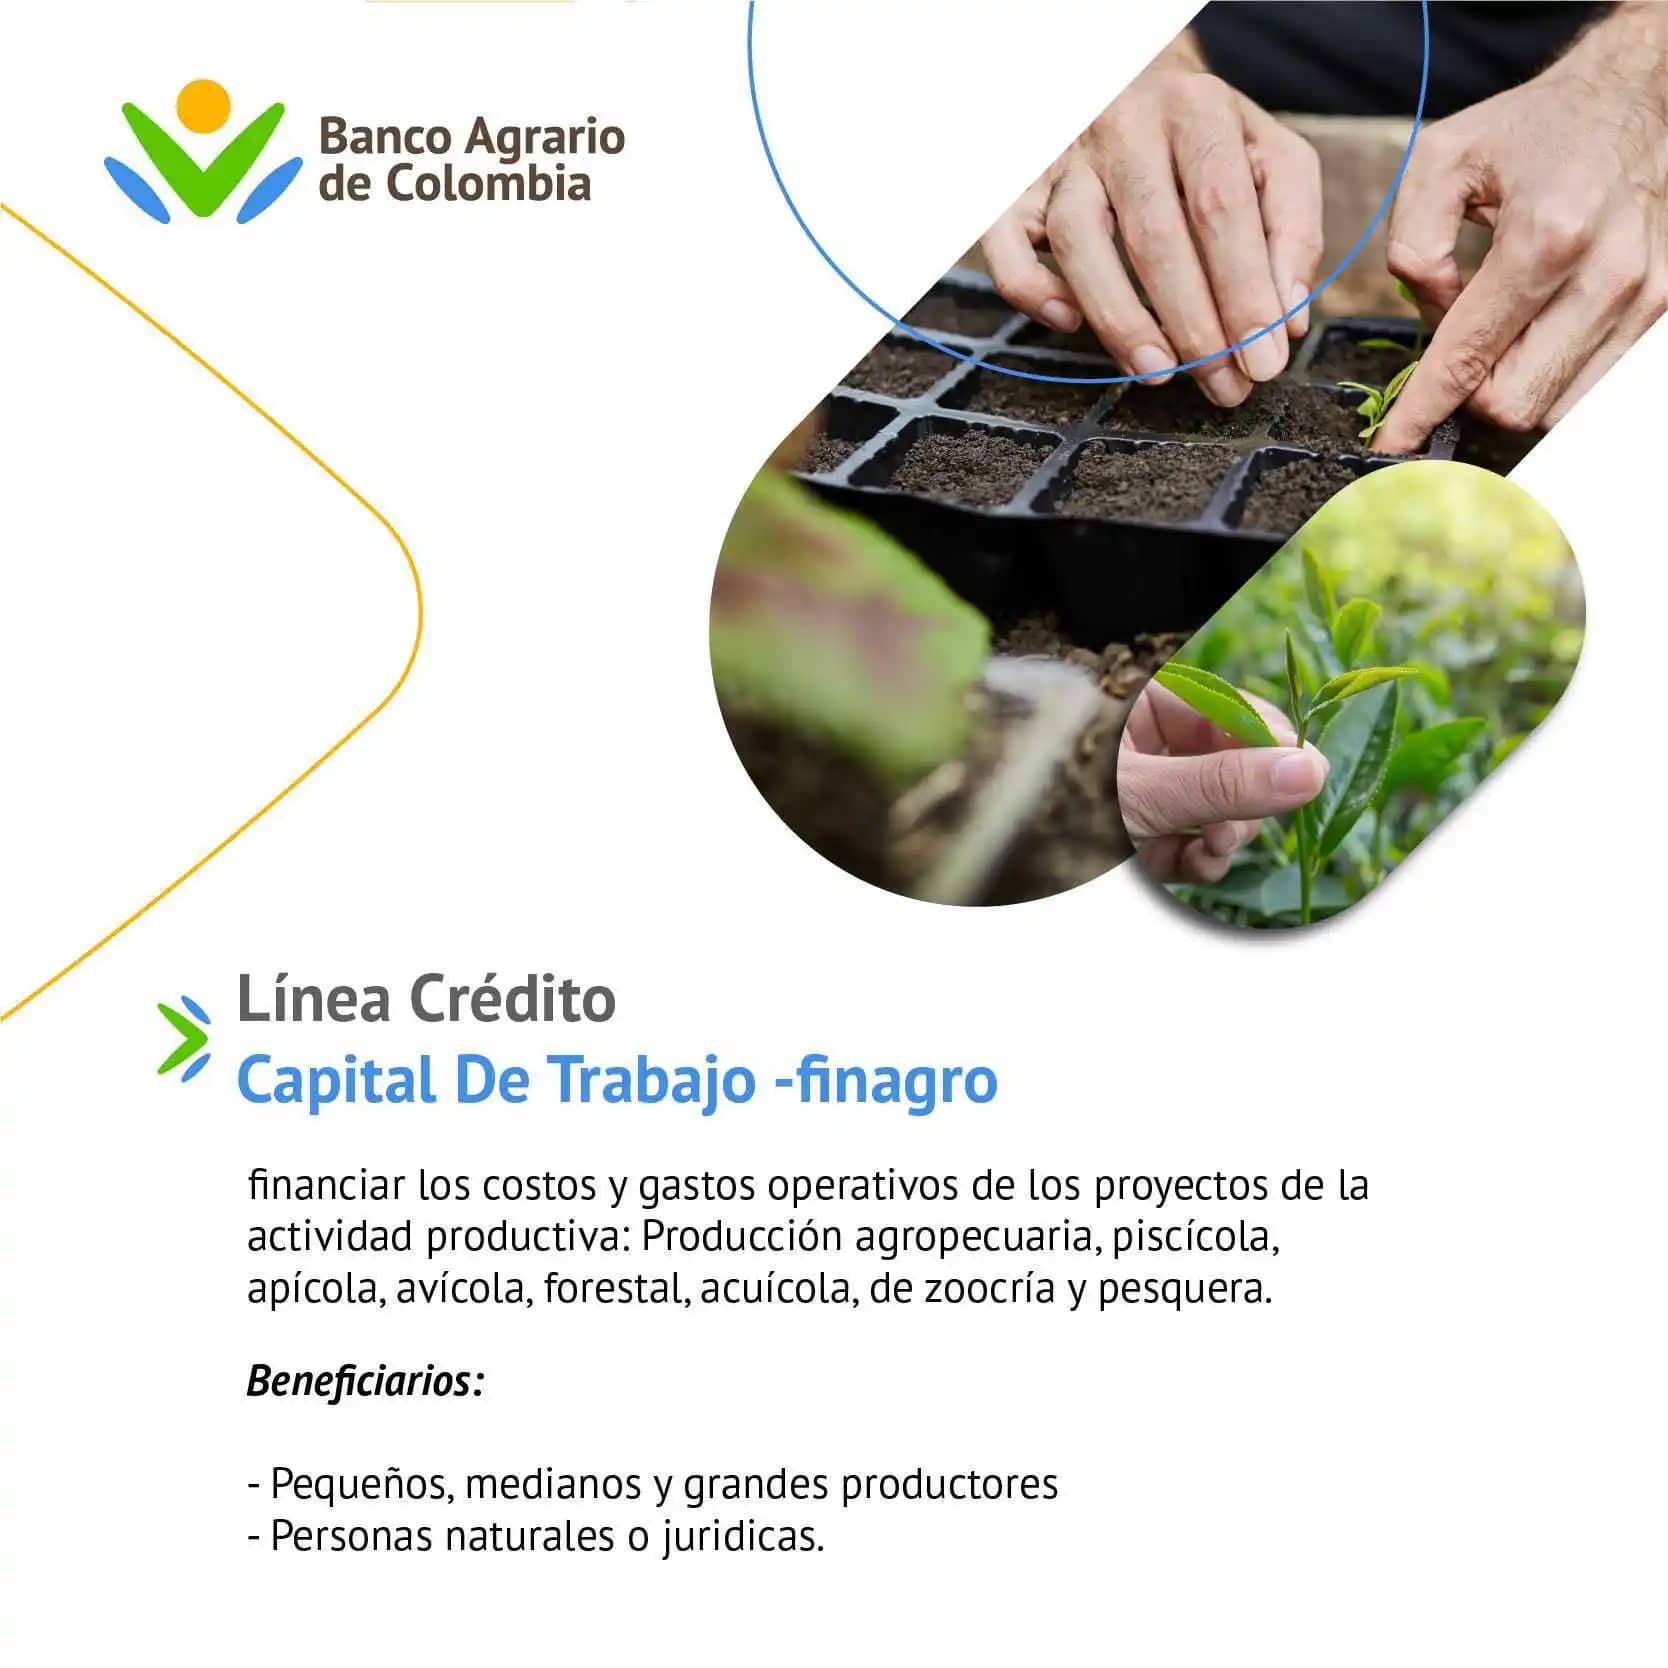 Línea de Crédito Capital de Trabajo -Finagro - Banco Agrario